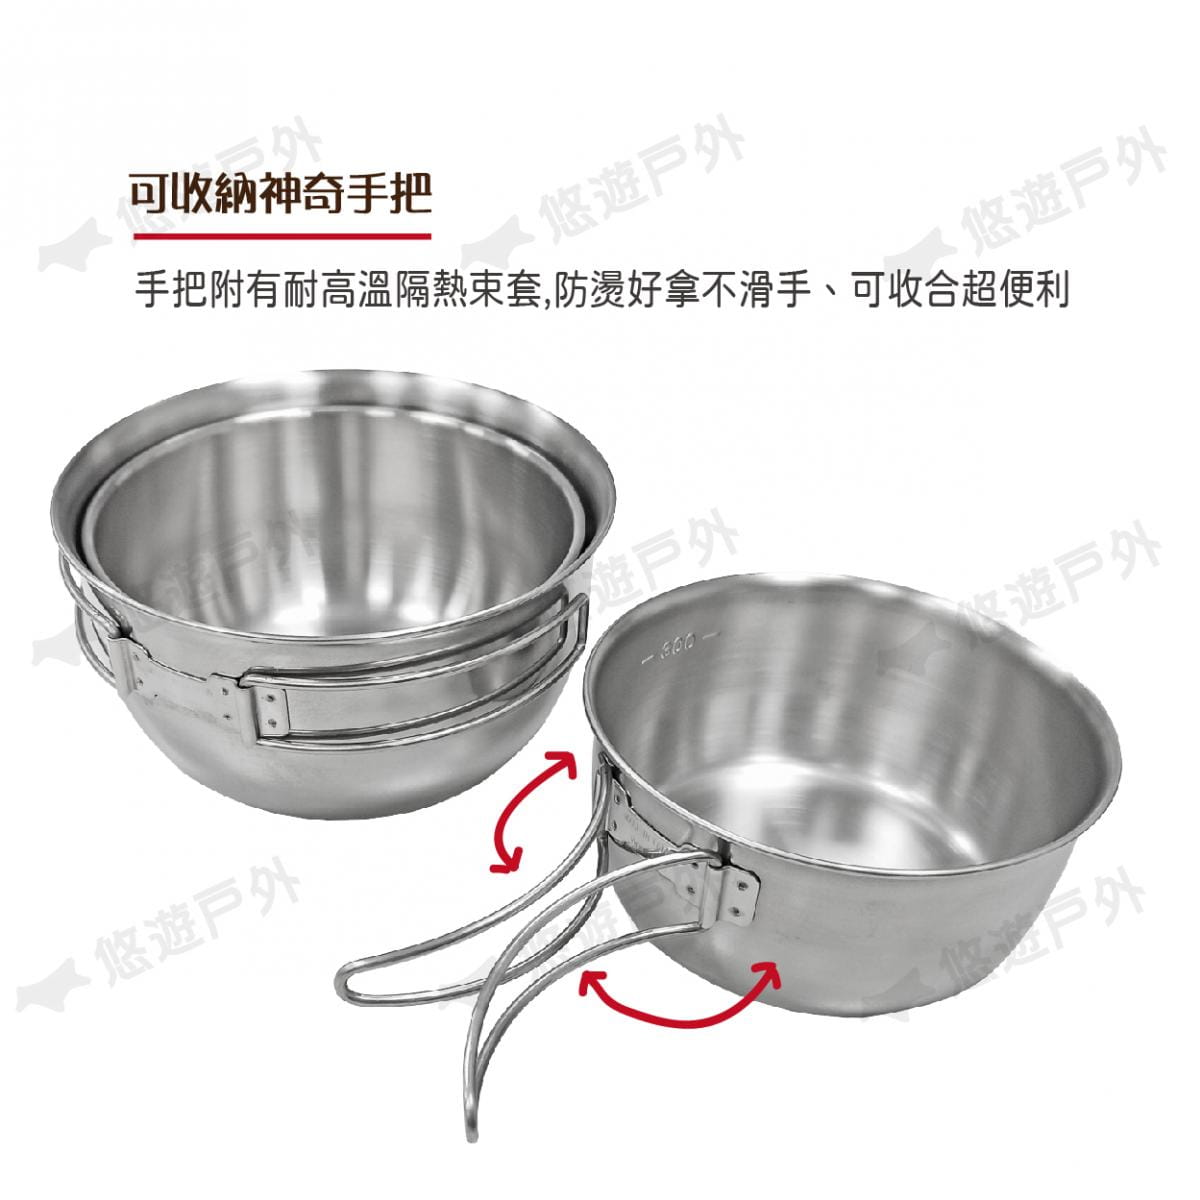 【文樑】ST-2020-2 304不鏽鋼碗 三件式 附收納袋 套碗 湯碗 餐具 碗 分菜盤 廚房 5